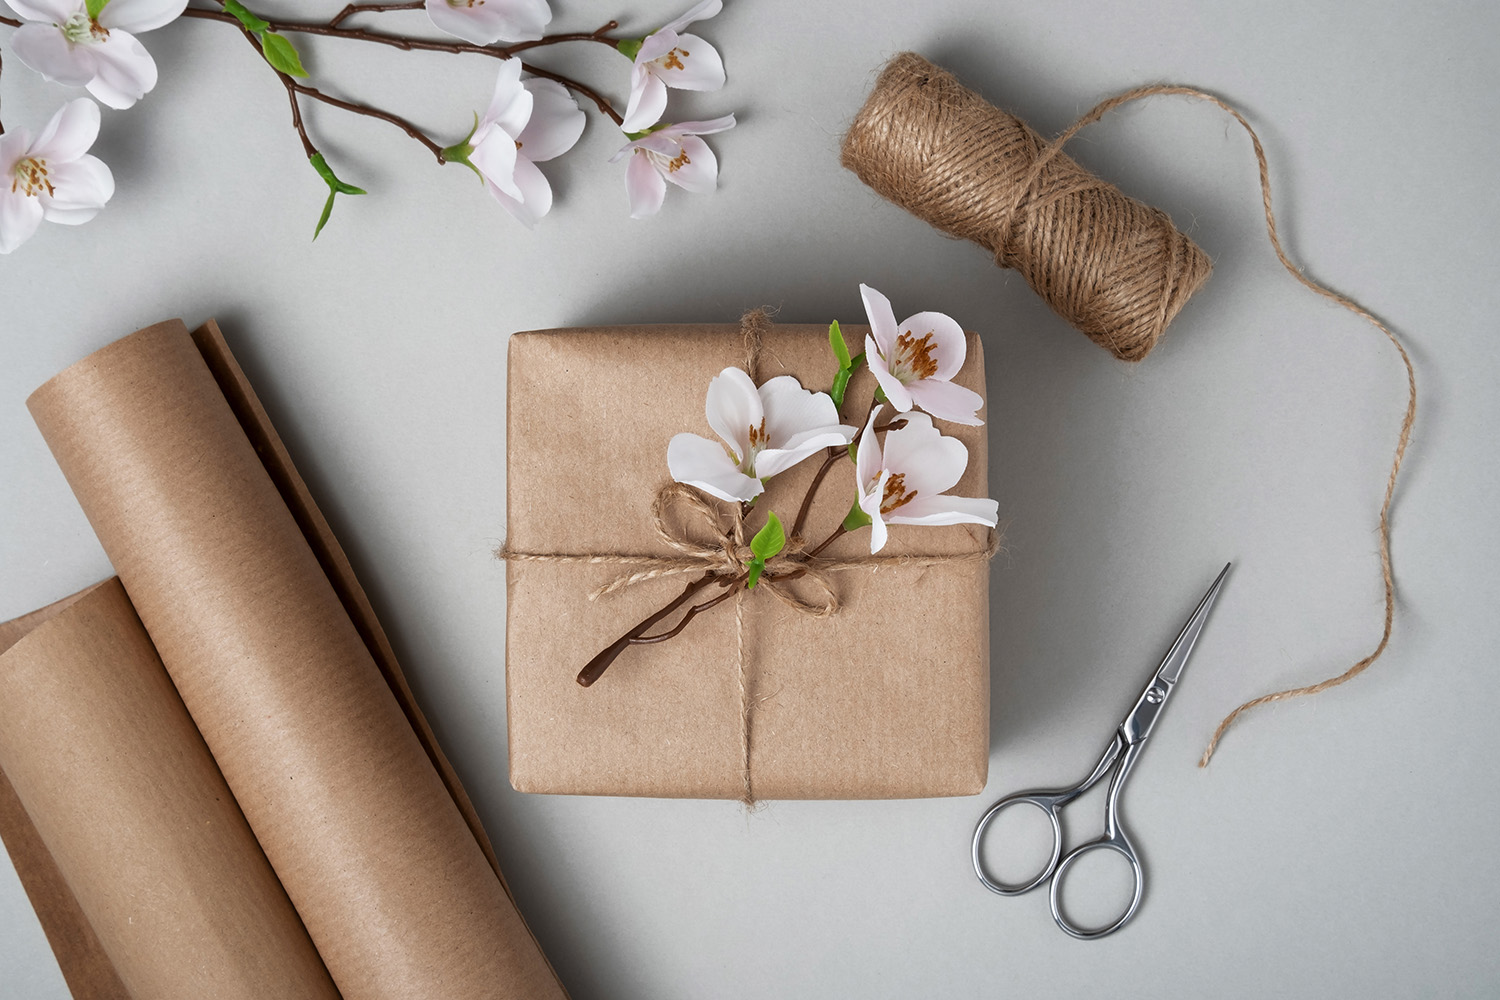 En gavepakke med blomster og brunt papir, saks og snor på en lys bakgrunn